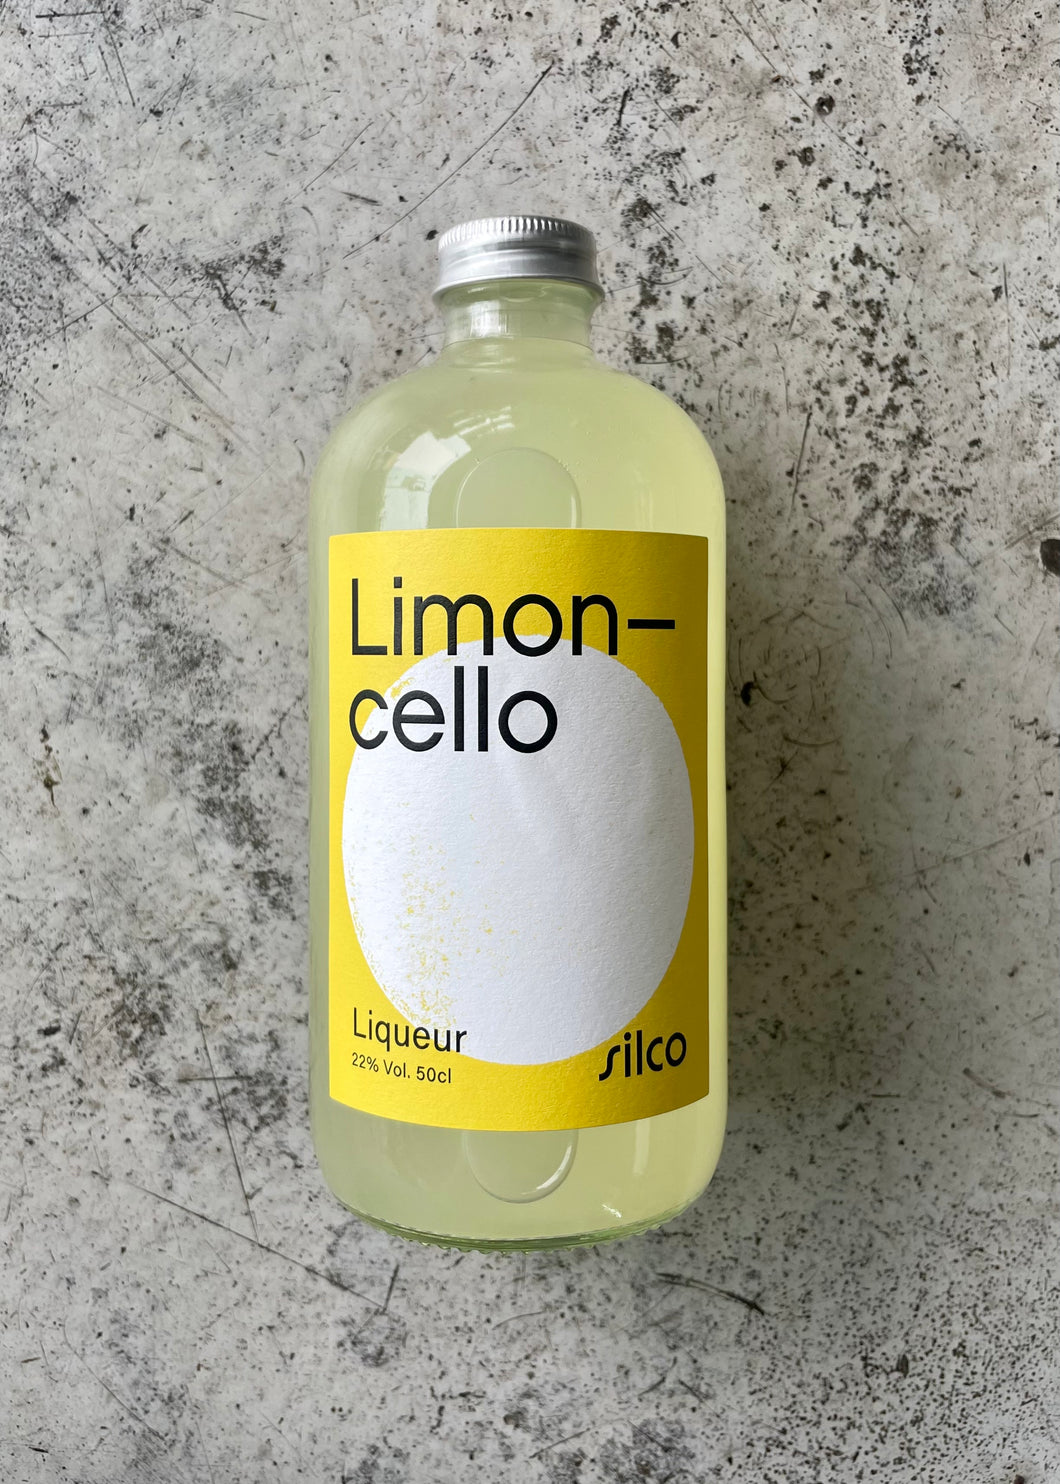 Silco Limoncello Liqueur 22% (500ml)